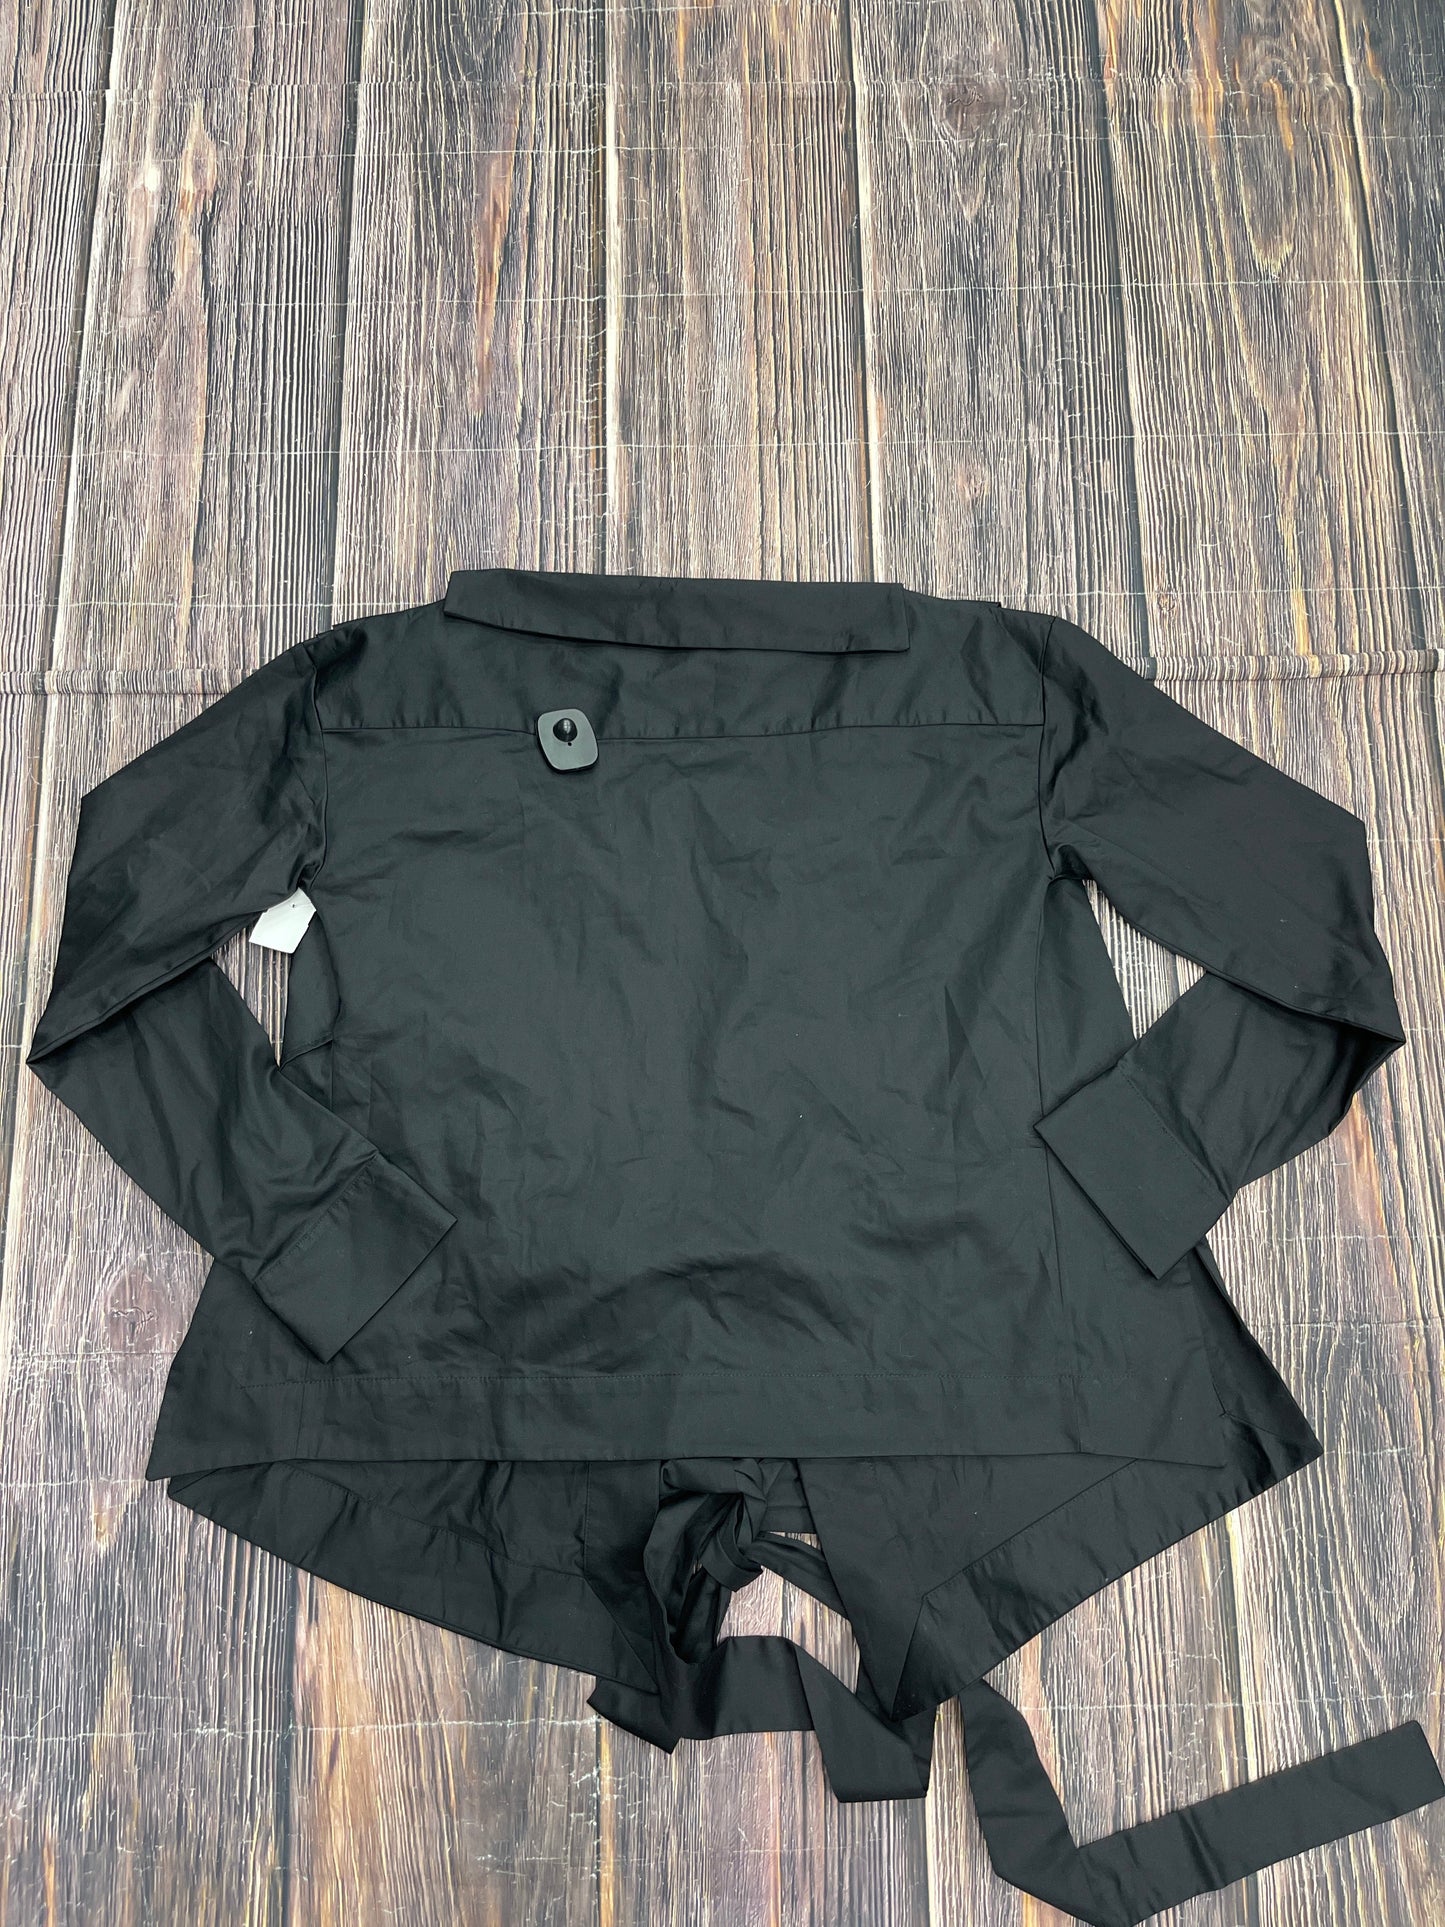 Black Jacket Other Cma, Size S